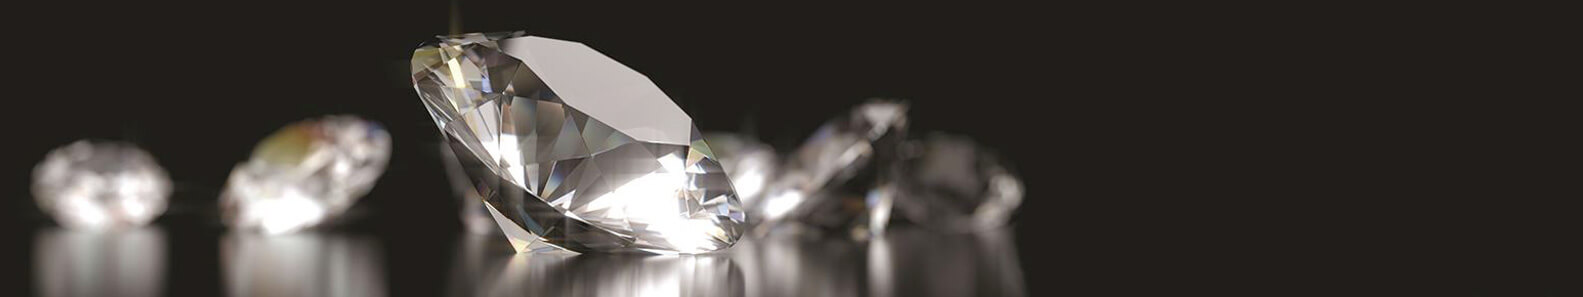 NISOL DIAMONDS PVT LTD